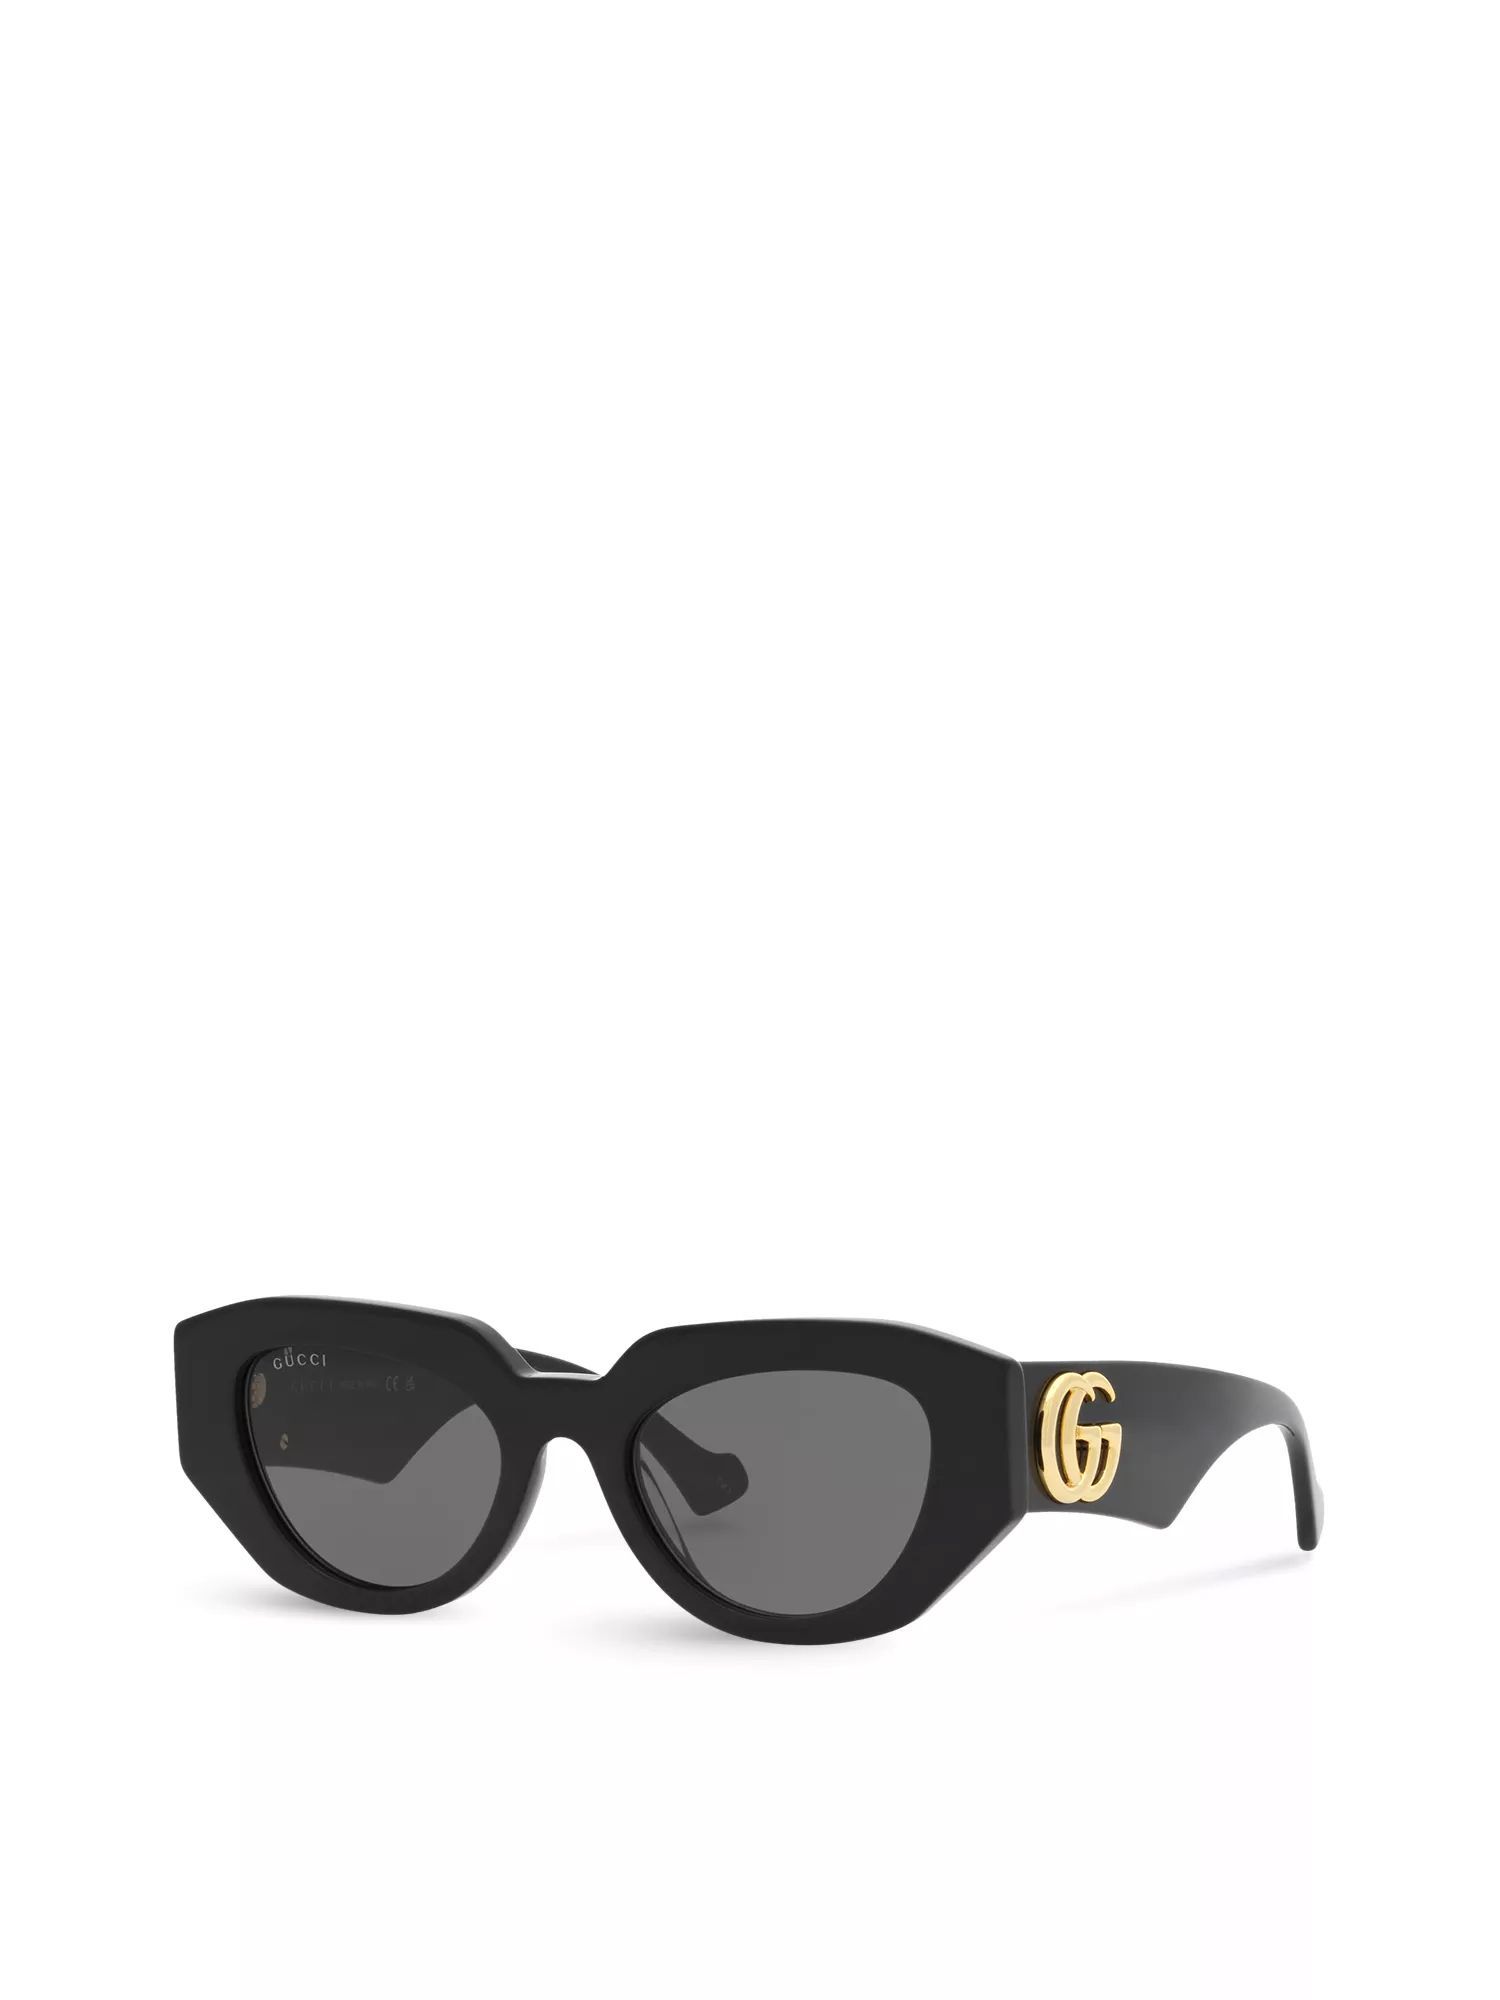 Gucci Grey Gradient Square Ladies Sunglasses GG0034SN 002 54 889652386362 -  Sunglasses - Jomashop